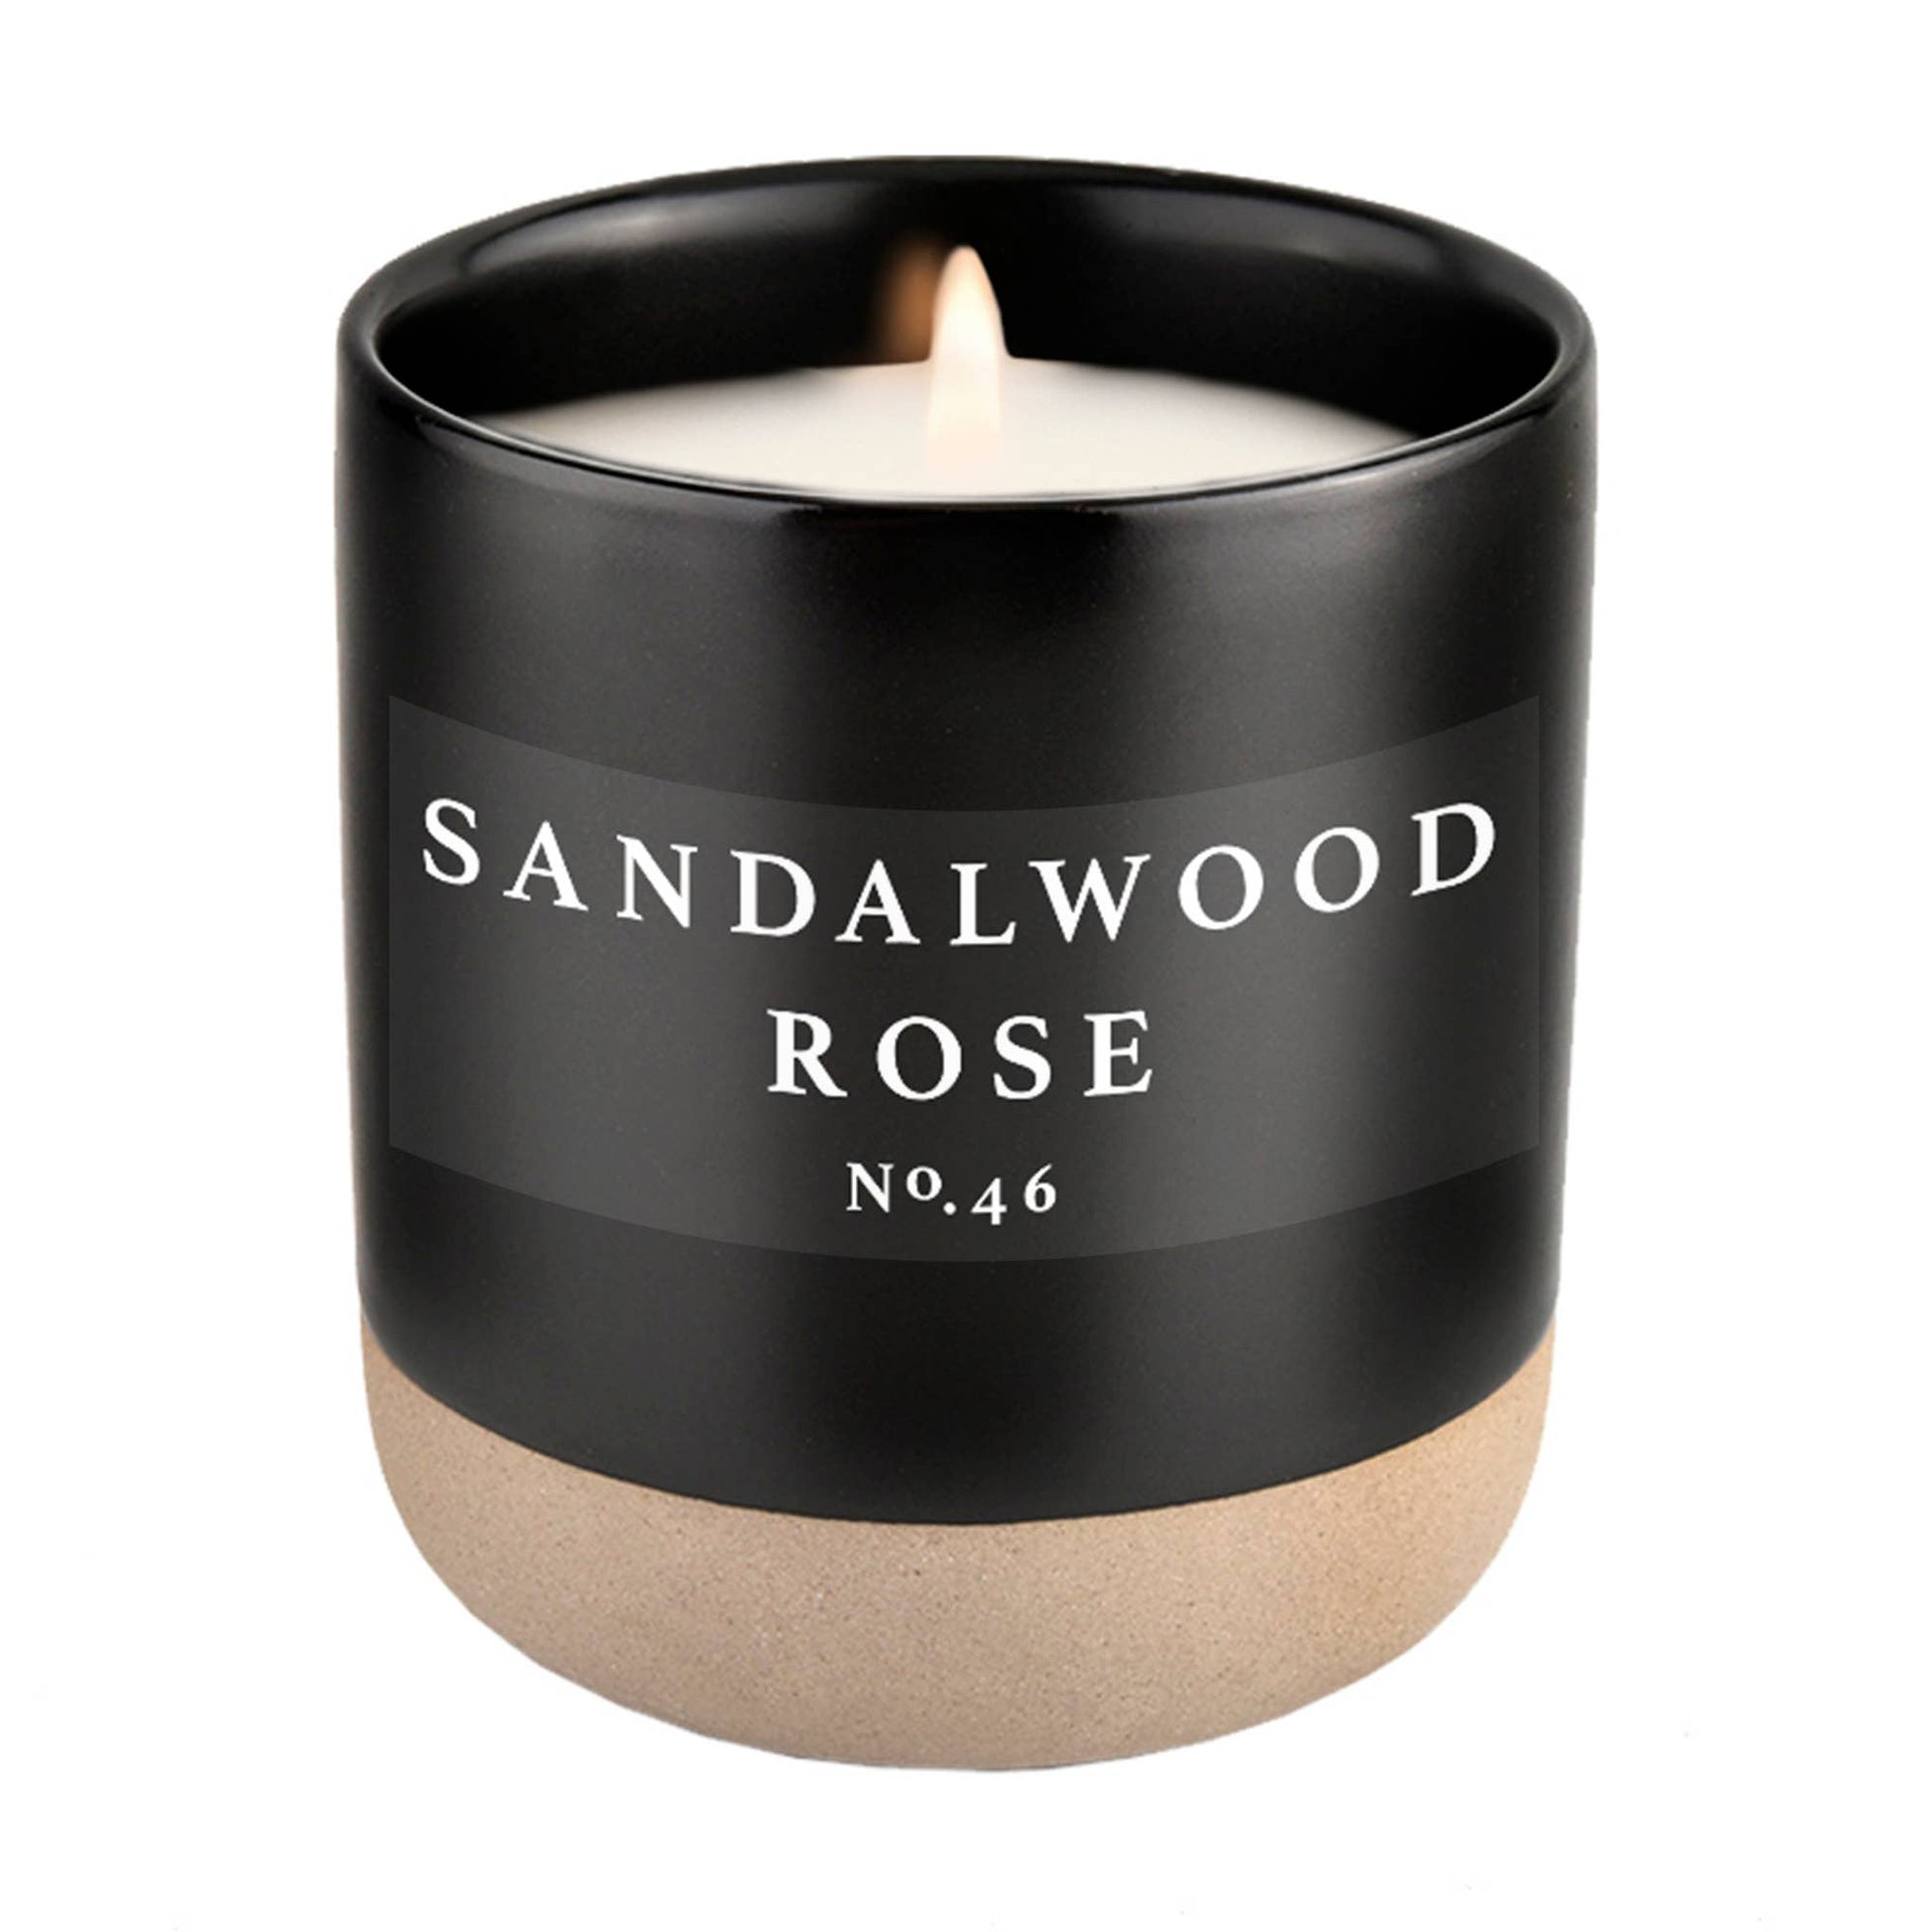 sandalwood rose soy candle - black stoneware jar - 12 oz